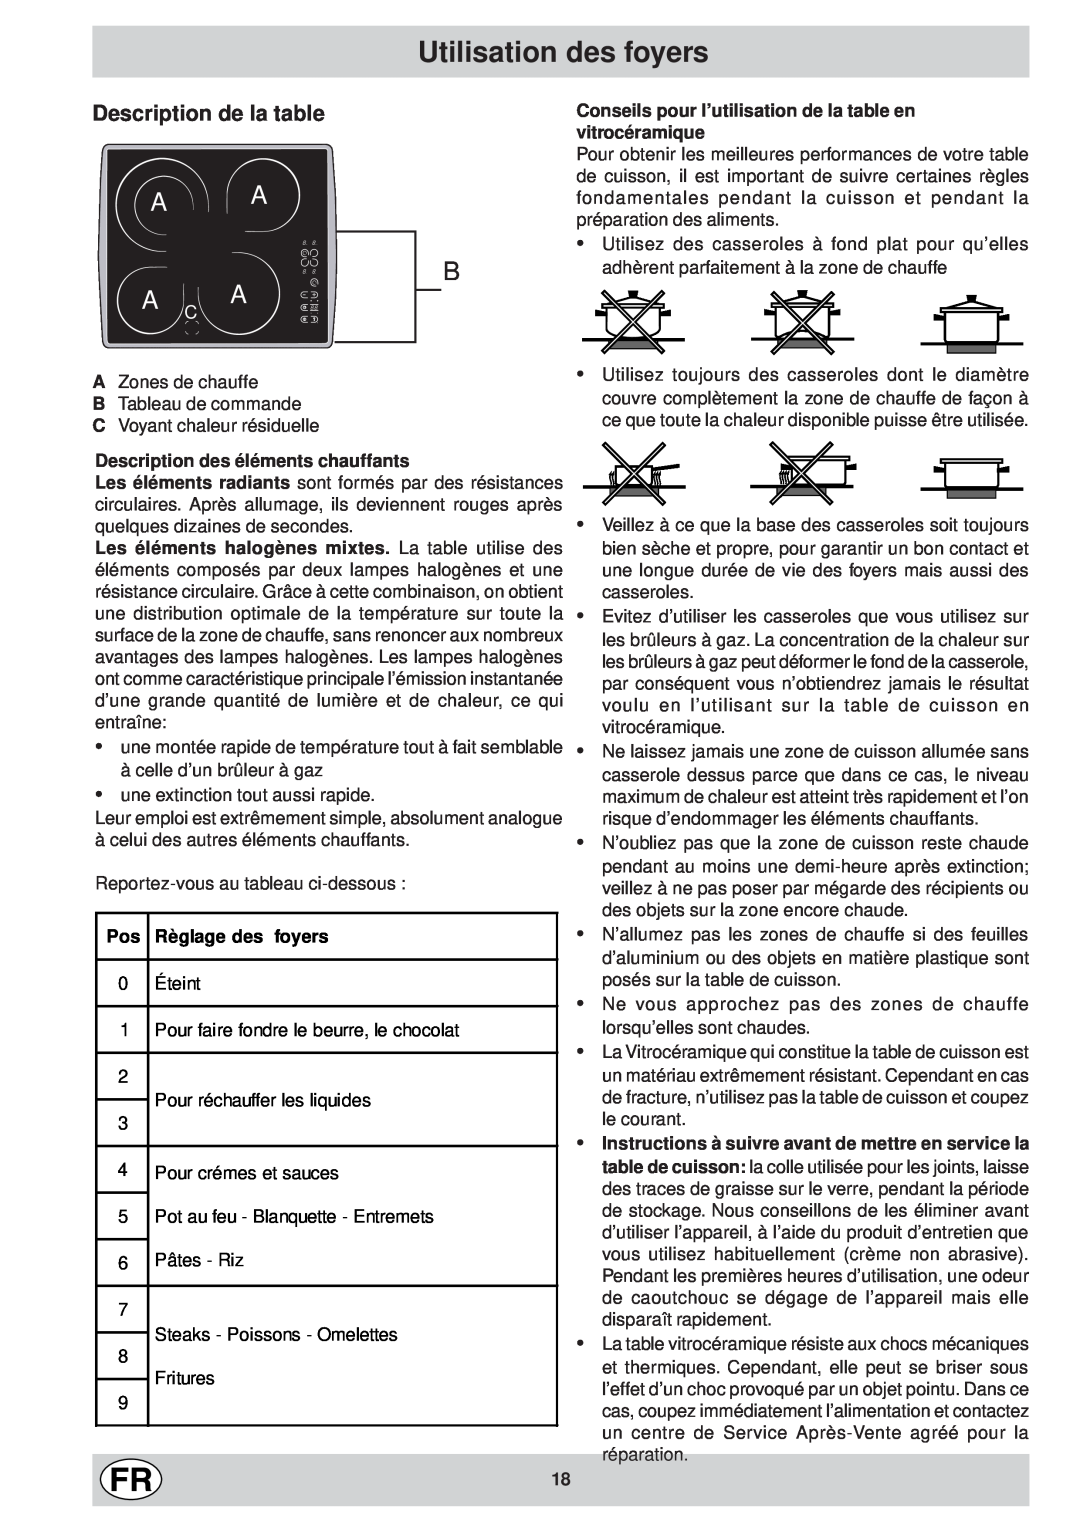 Ariston KT 8104 QO manual Utilisation des foyers, Description des éléments chauffants, Règlage des foyers 